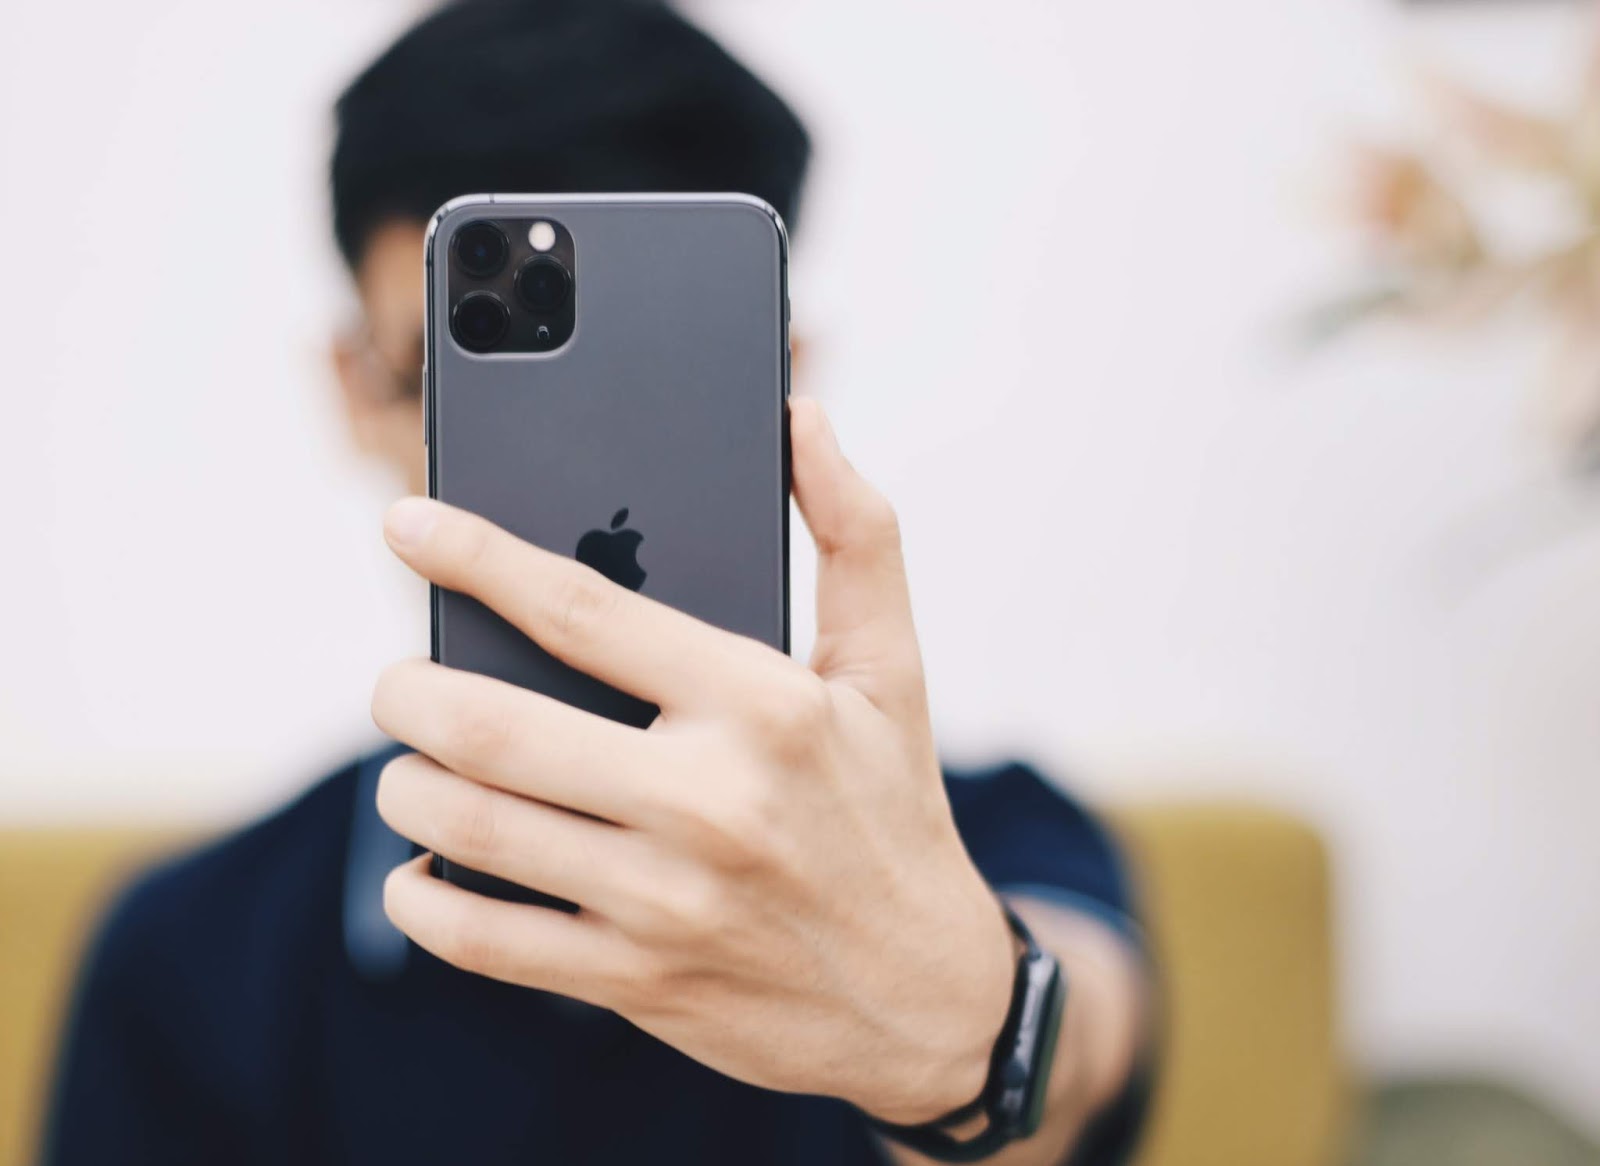 Mode Potret pada Kamera iPhone Tidak Berfungsi